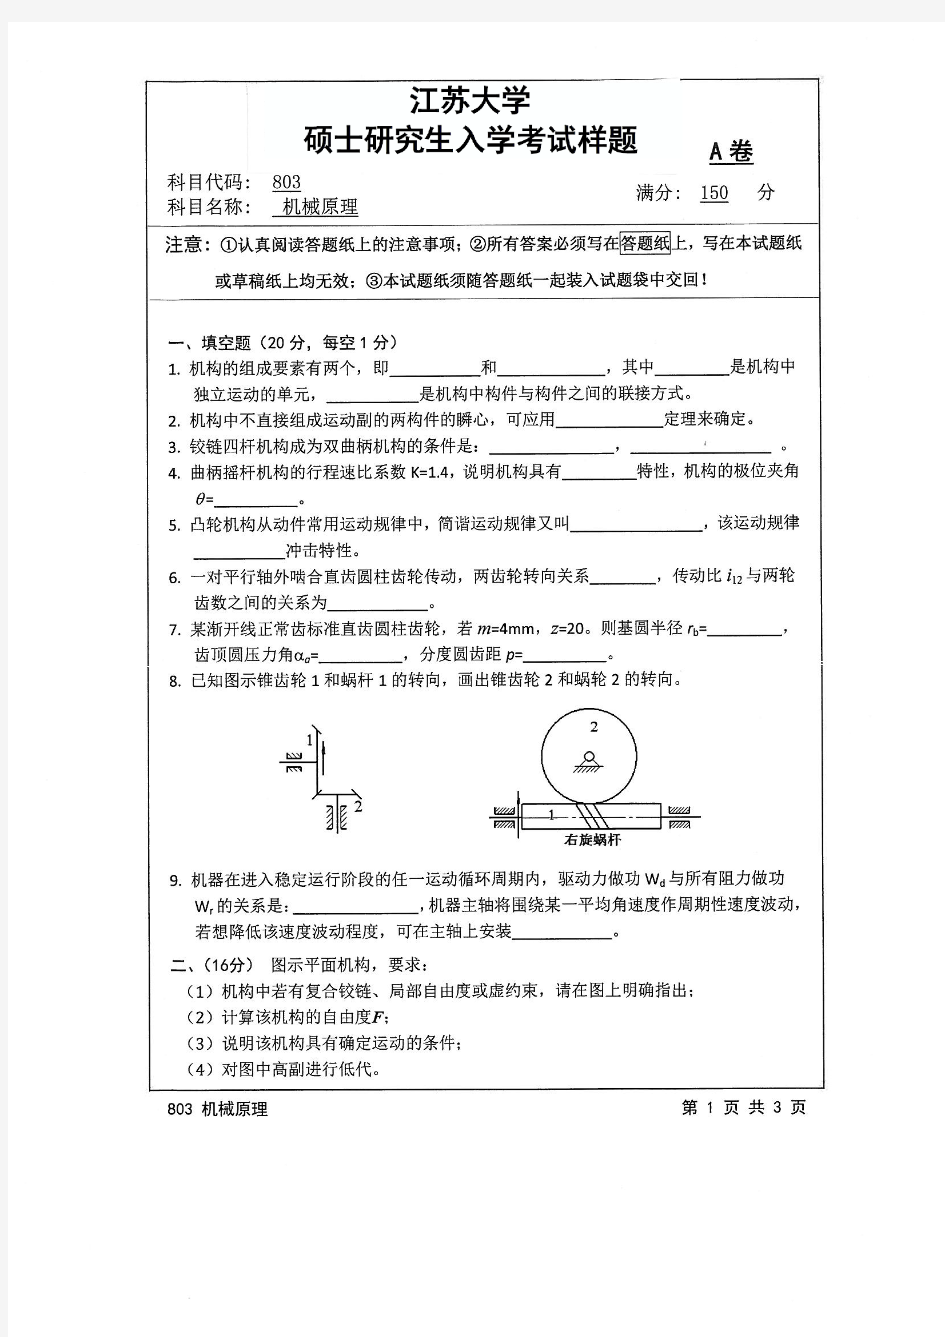 江苏大学803机械原理17-19年真题